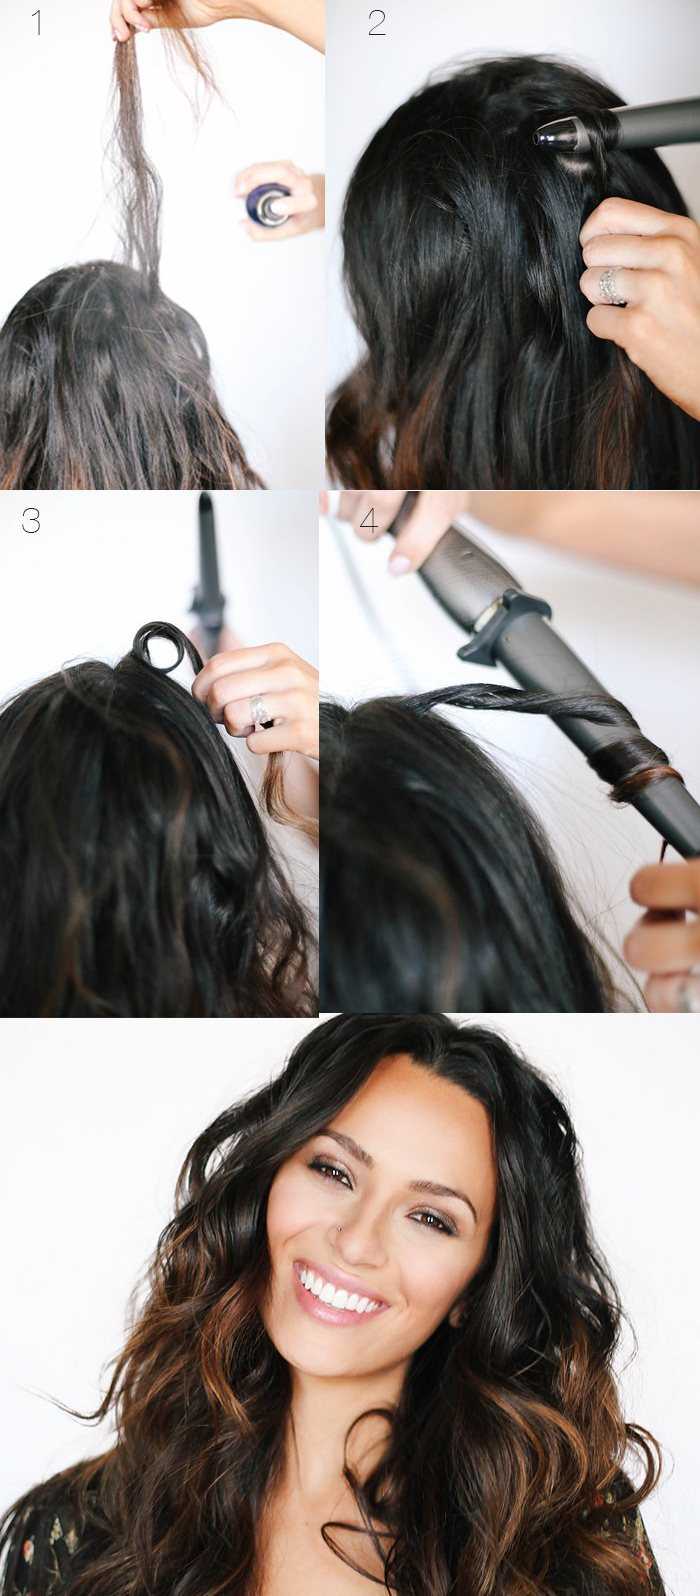 Кудри-локоны. как накрутить волосы утюжком?